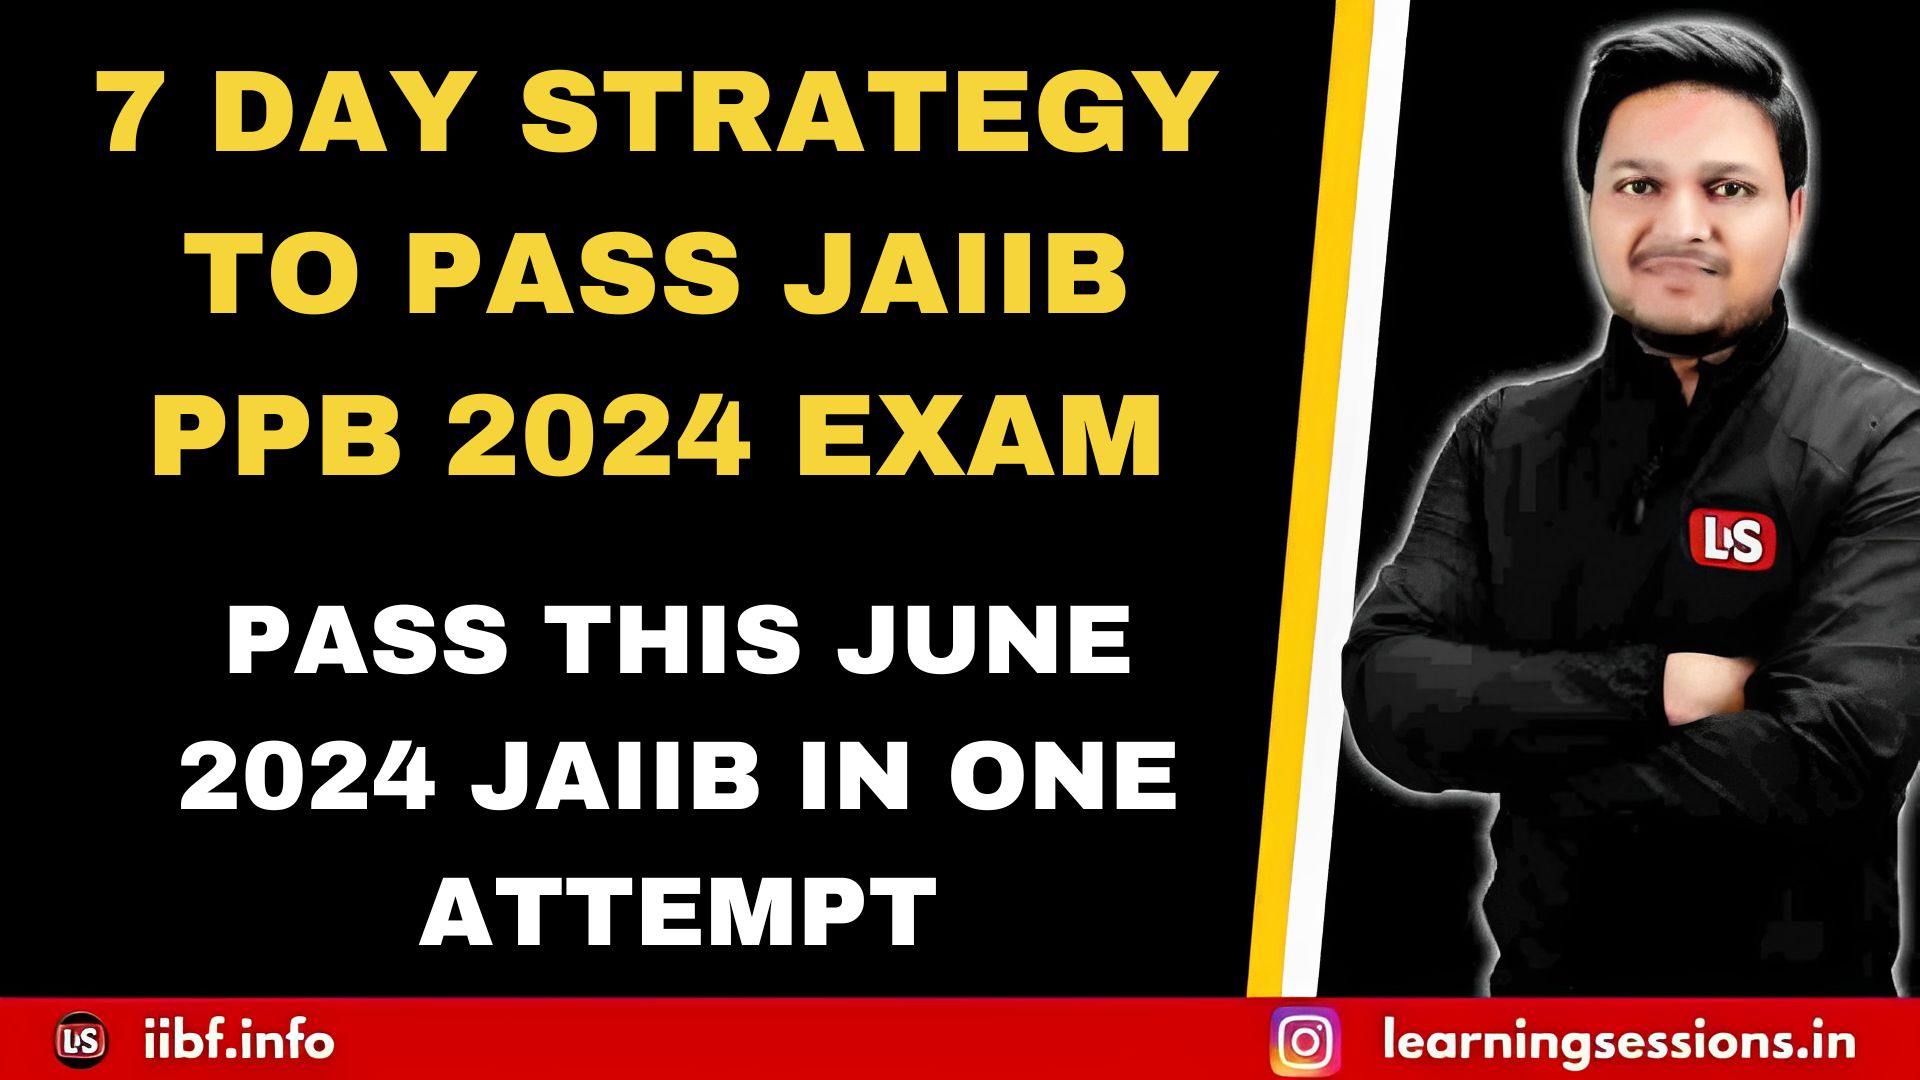 7 DAY STRATEGY TO PASS JAIIB PPB 2024 EXAM